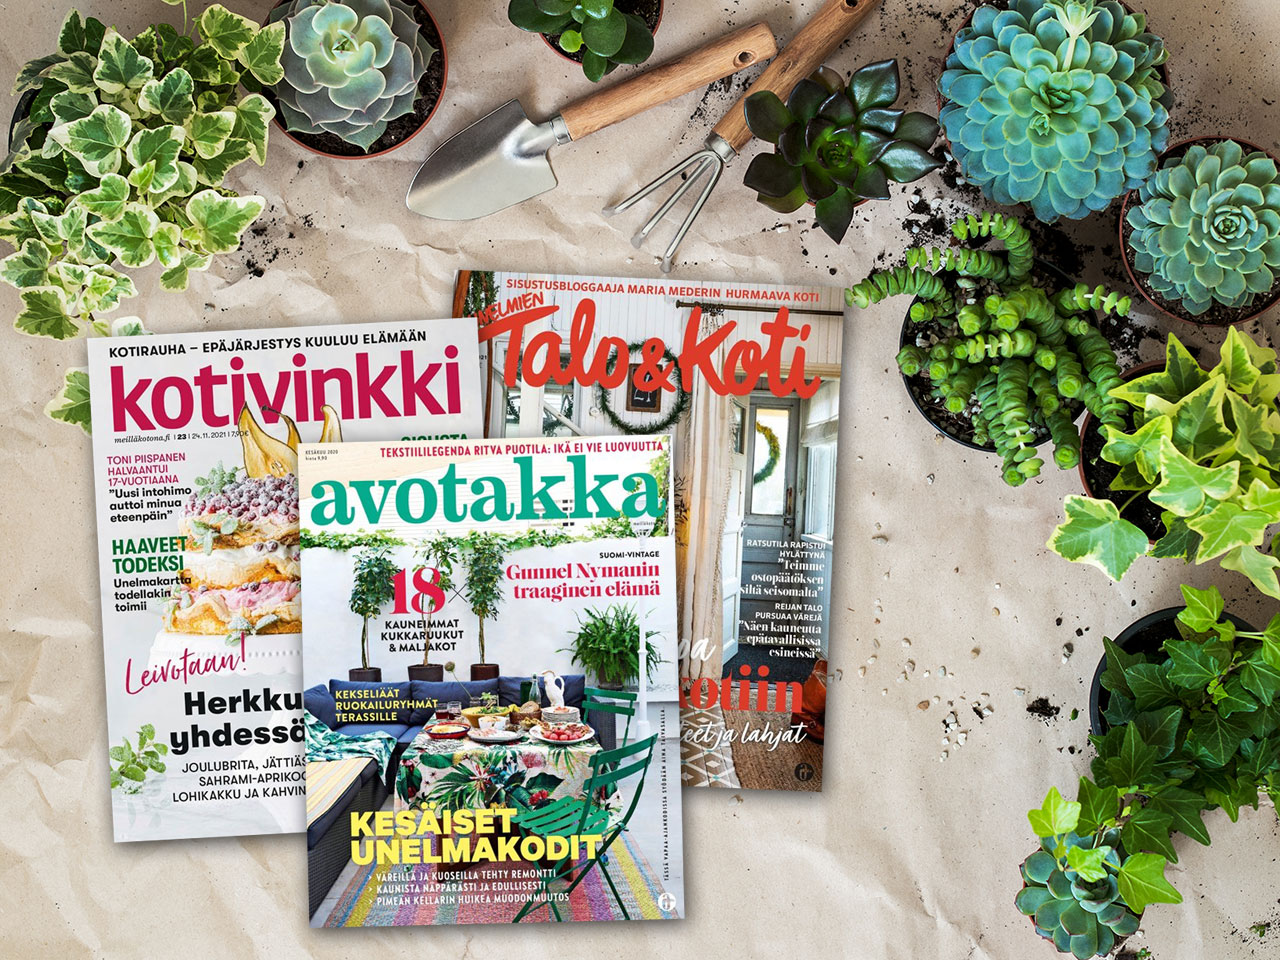 Suomalaisia sisustuslehtiä edustavat mm. Kotivinkki, Avotakka ja Unelmien Talo&Koti.